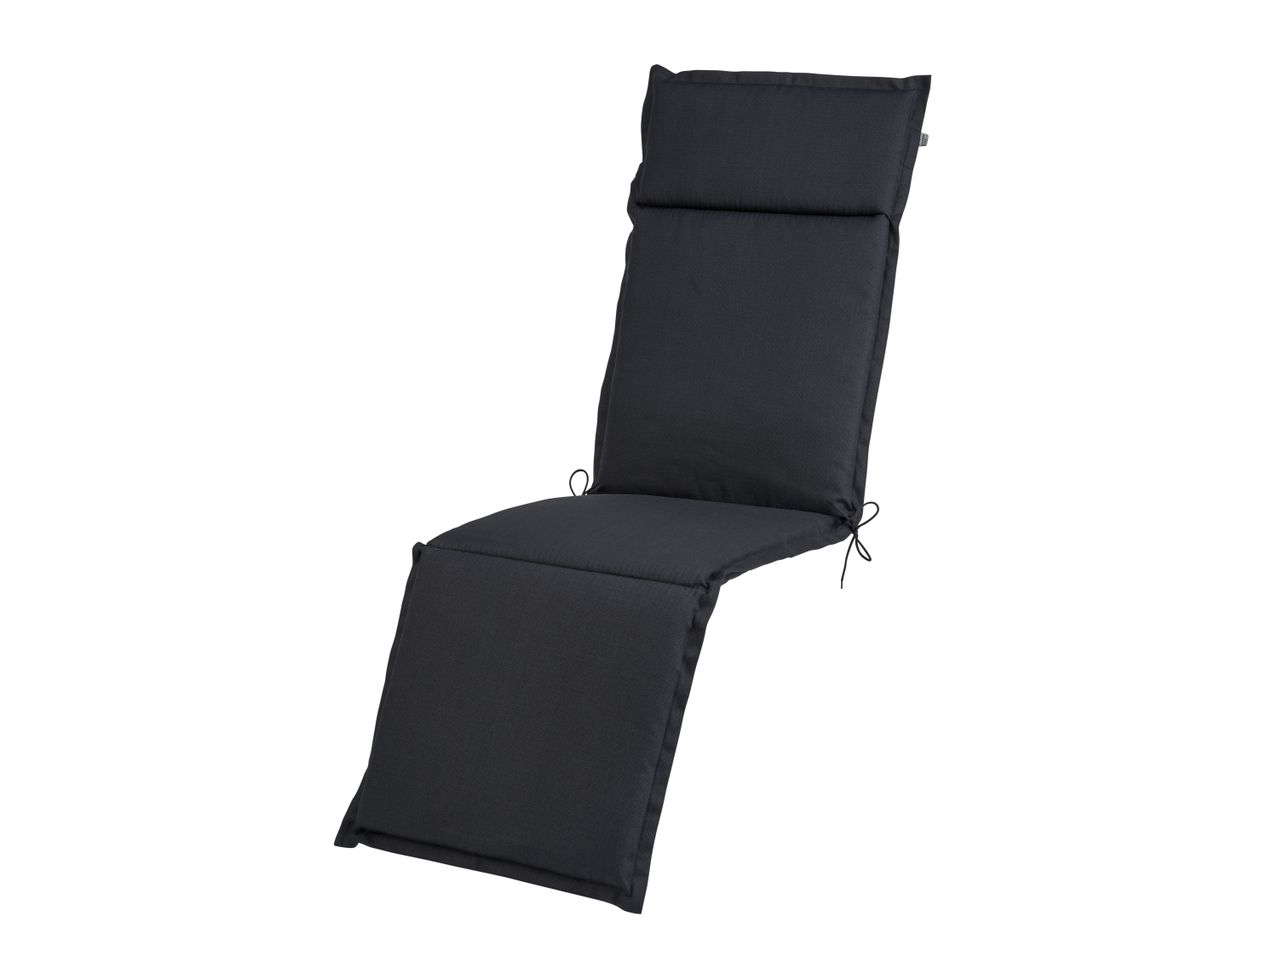 Cuscino per sedia sdraio 167x50 cm , prezzo 14.99 EUR 
Cuscino per sedia sdraio ...